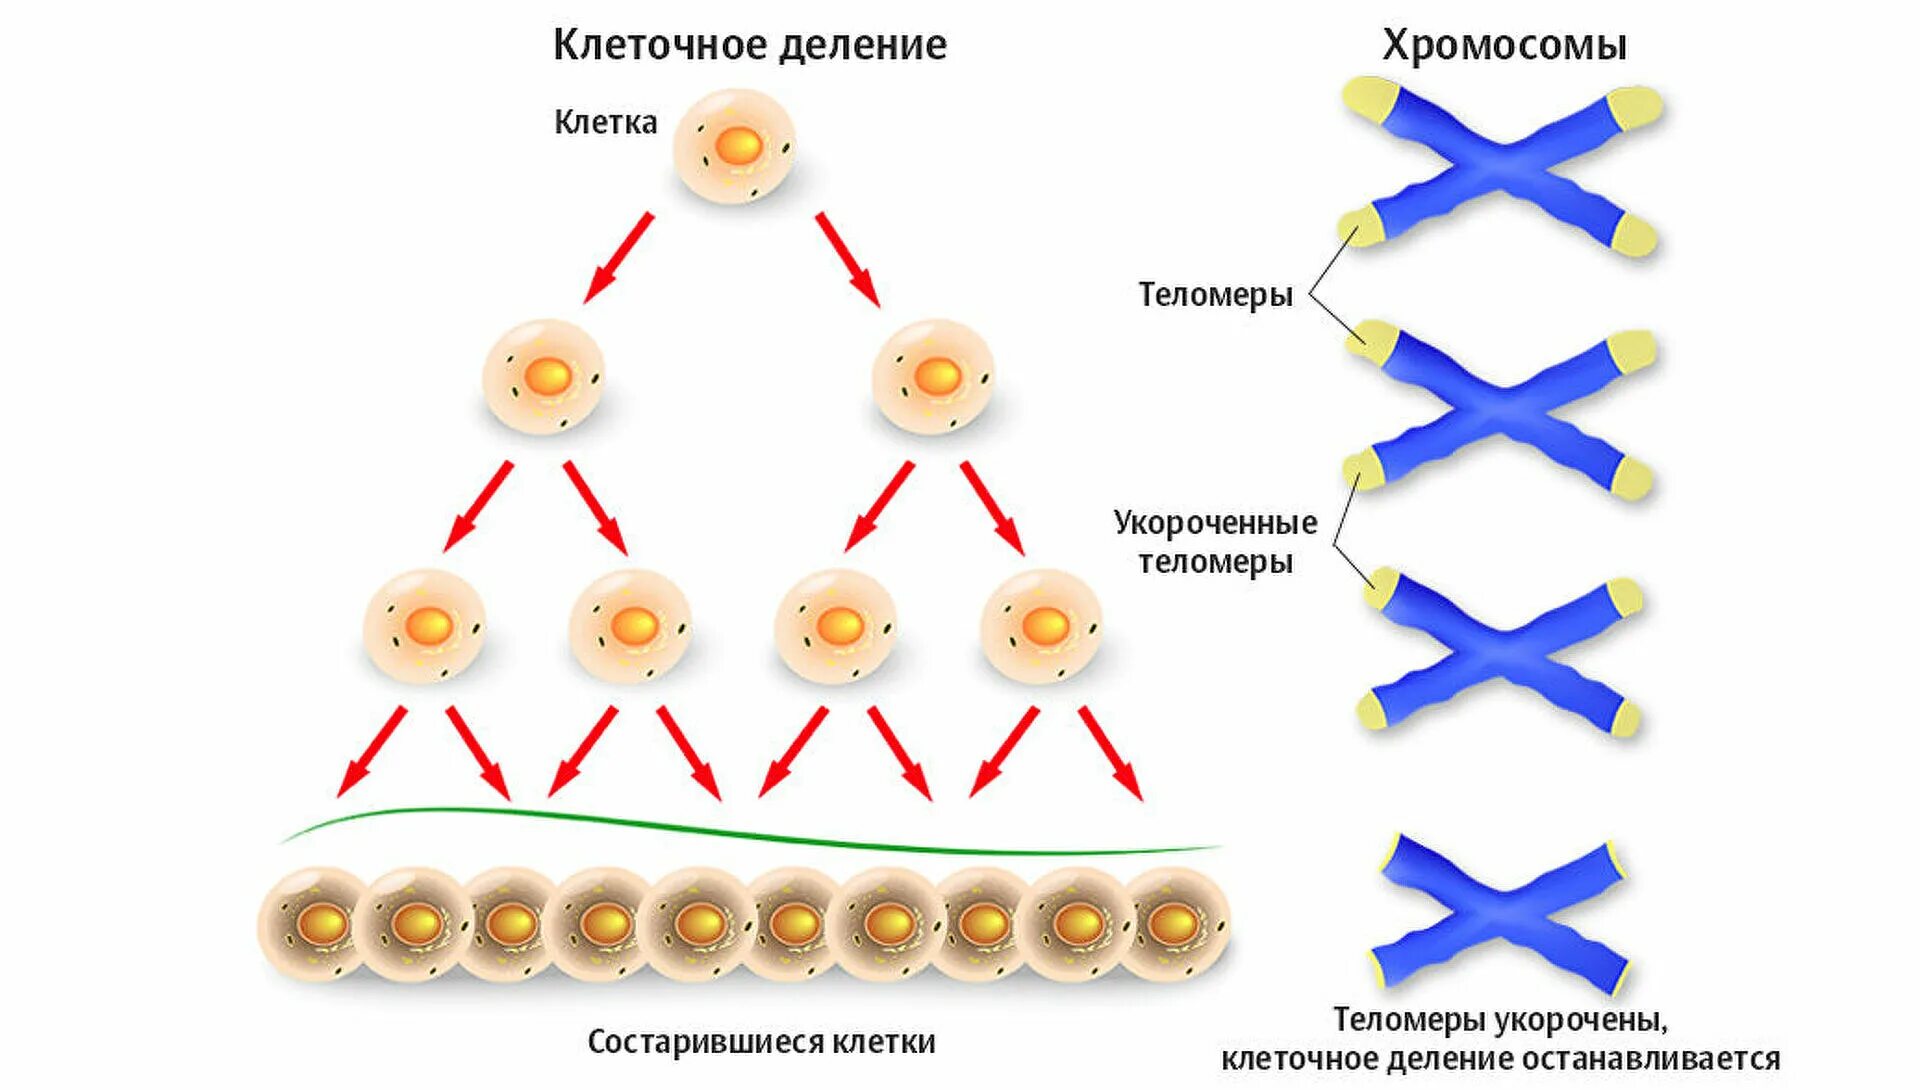 Накопление энергии для деления клетки. Старение клетки. Процесс старения клетки. Клеточное деление. Клеточная теория старения.